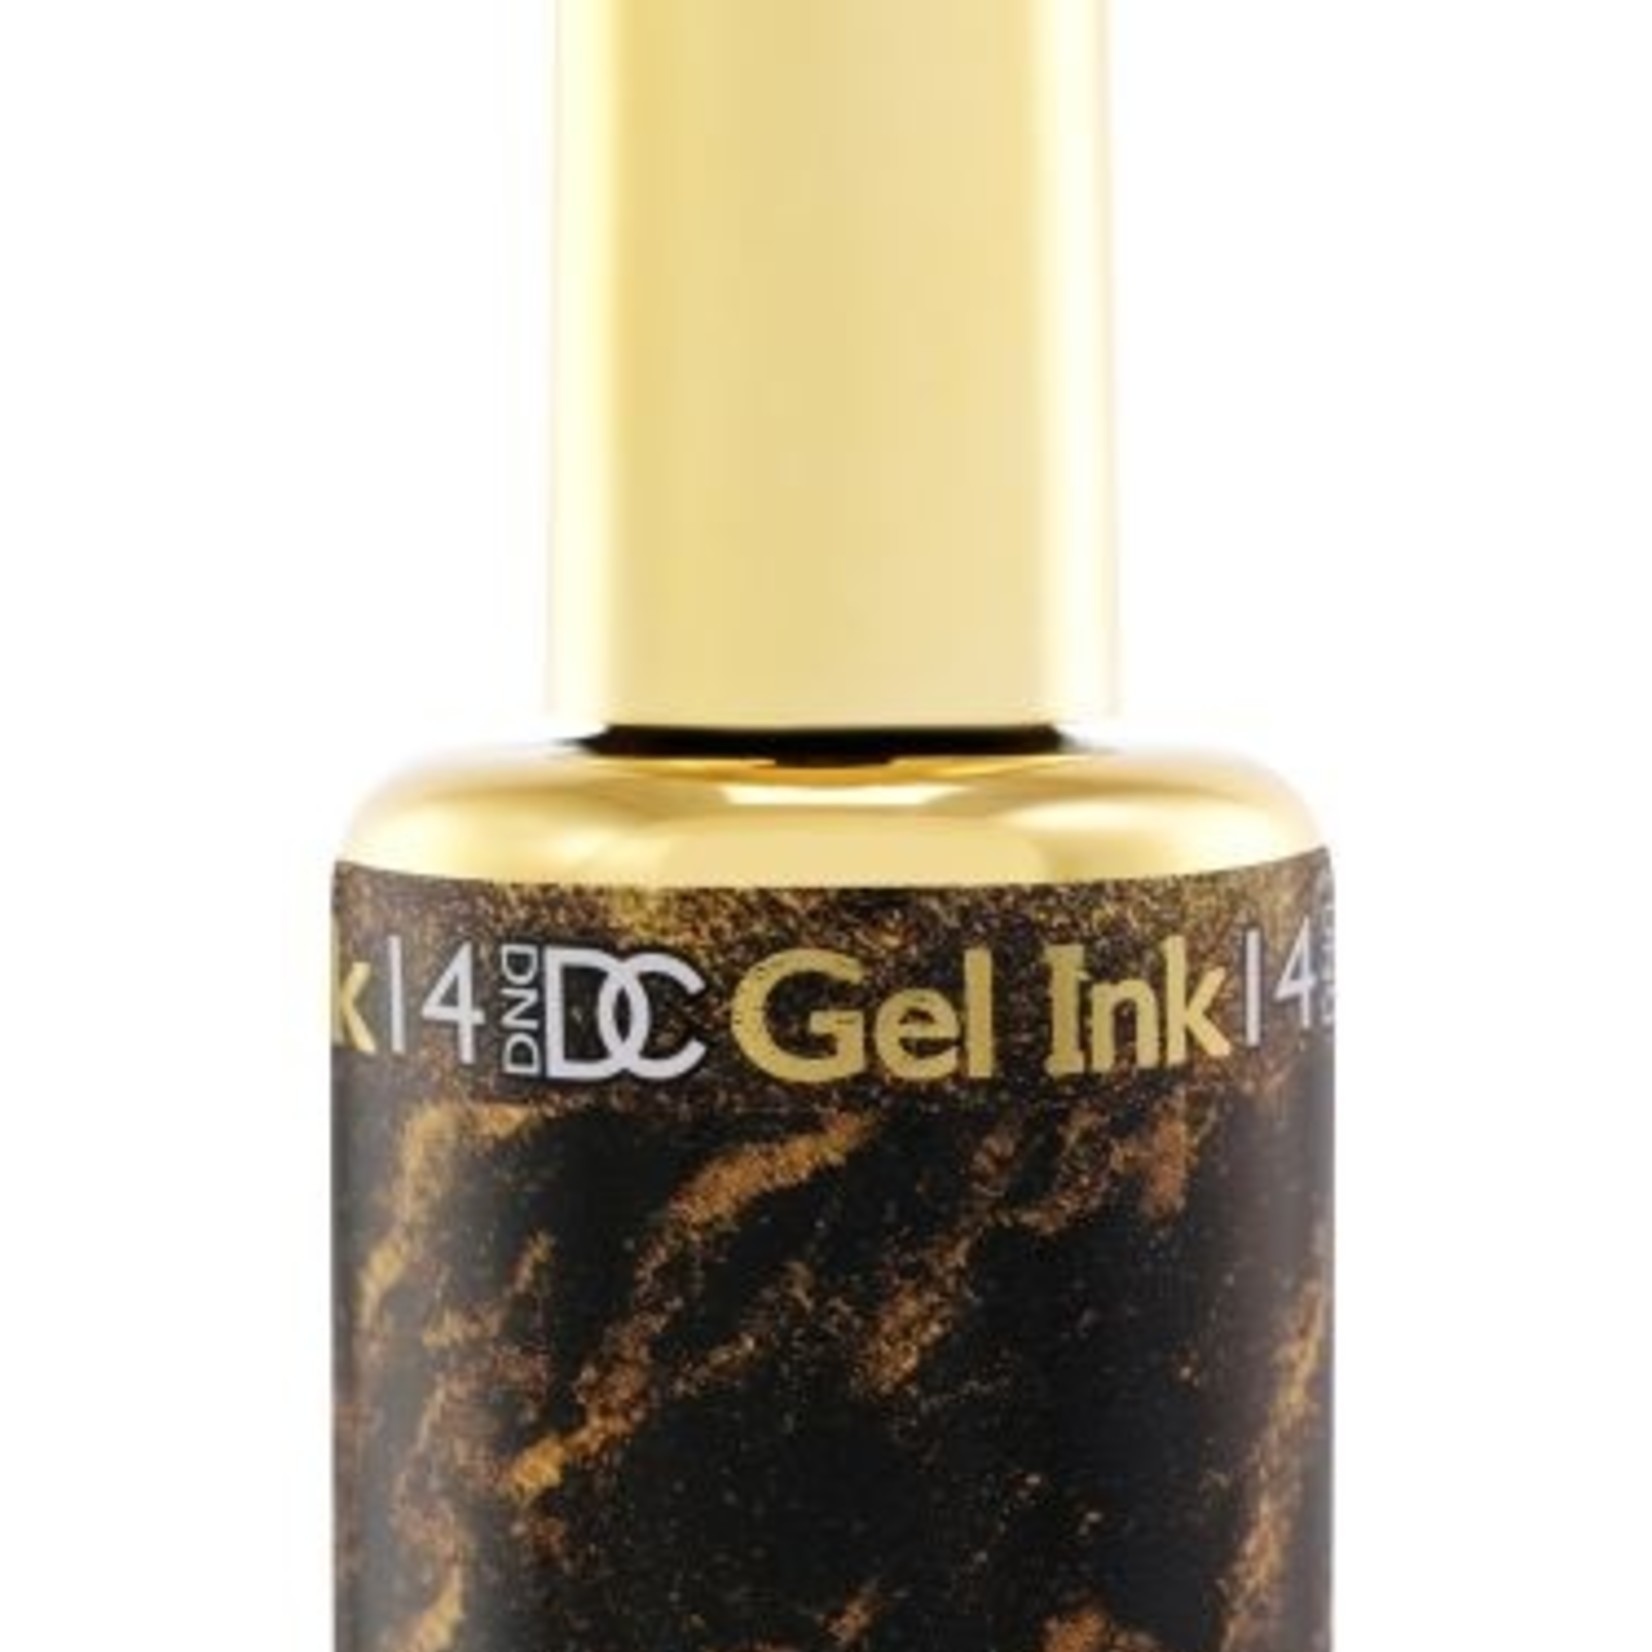 DC - Marble Gel Ink - 14 - Gold - .6 fl oz